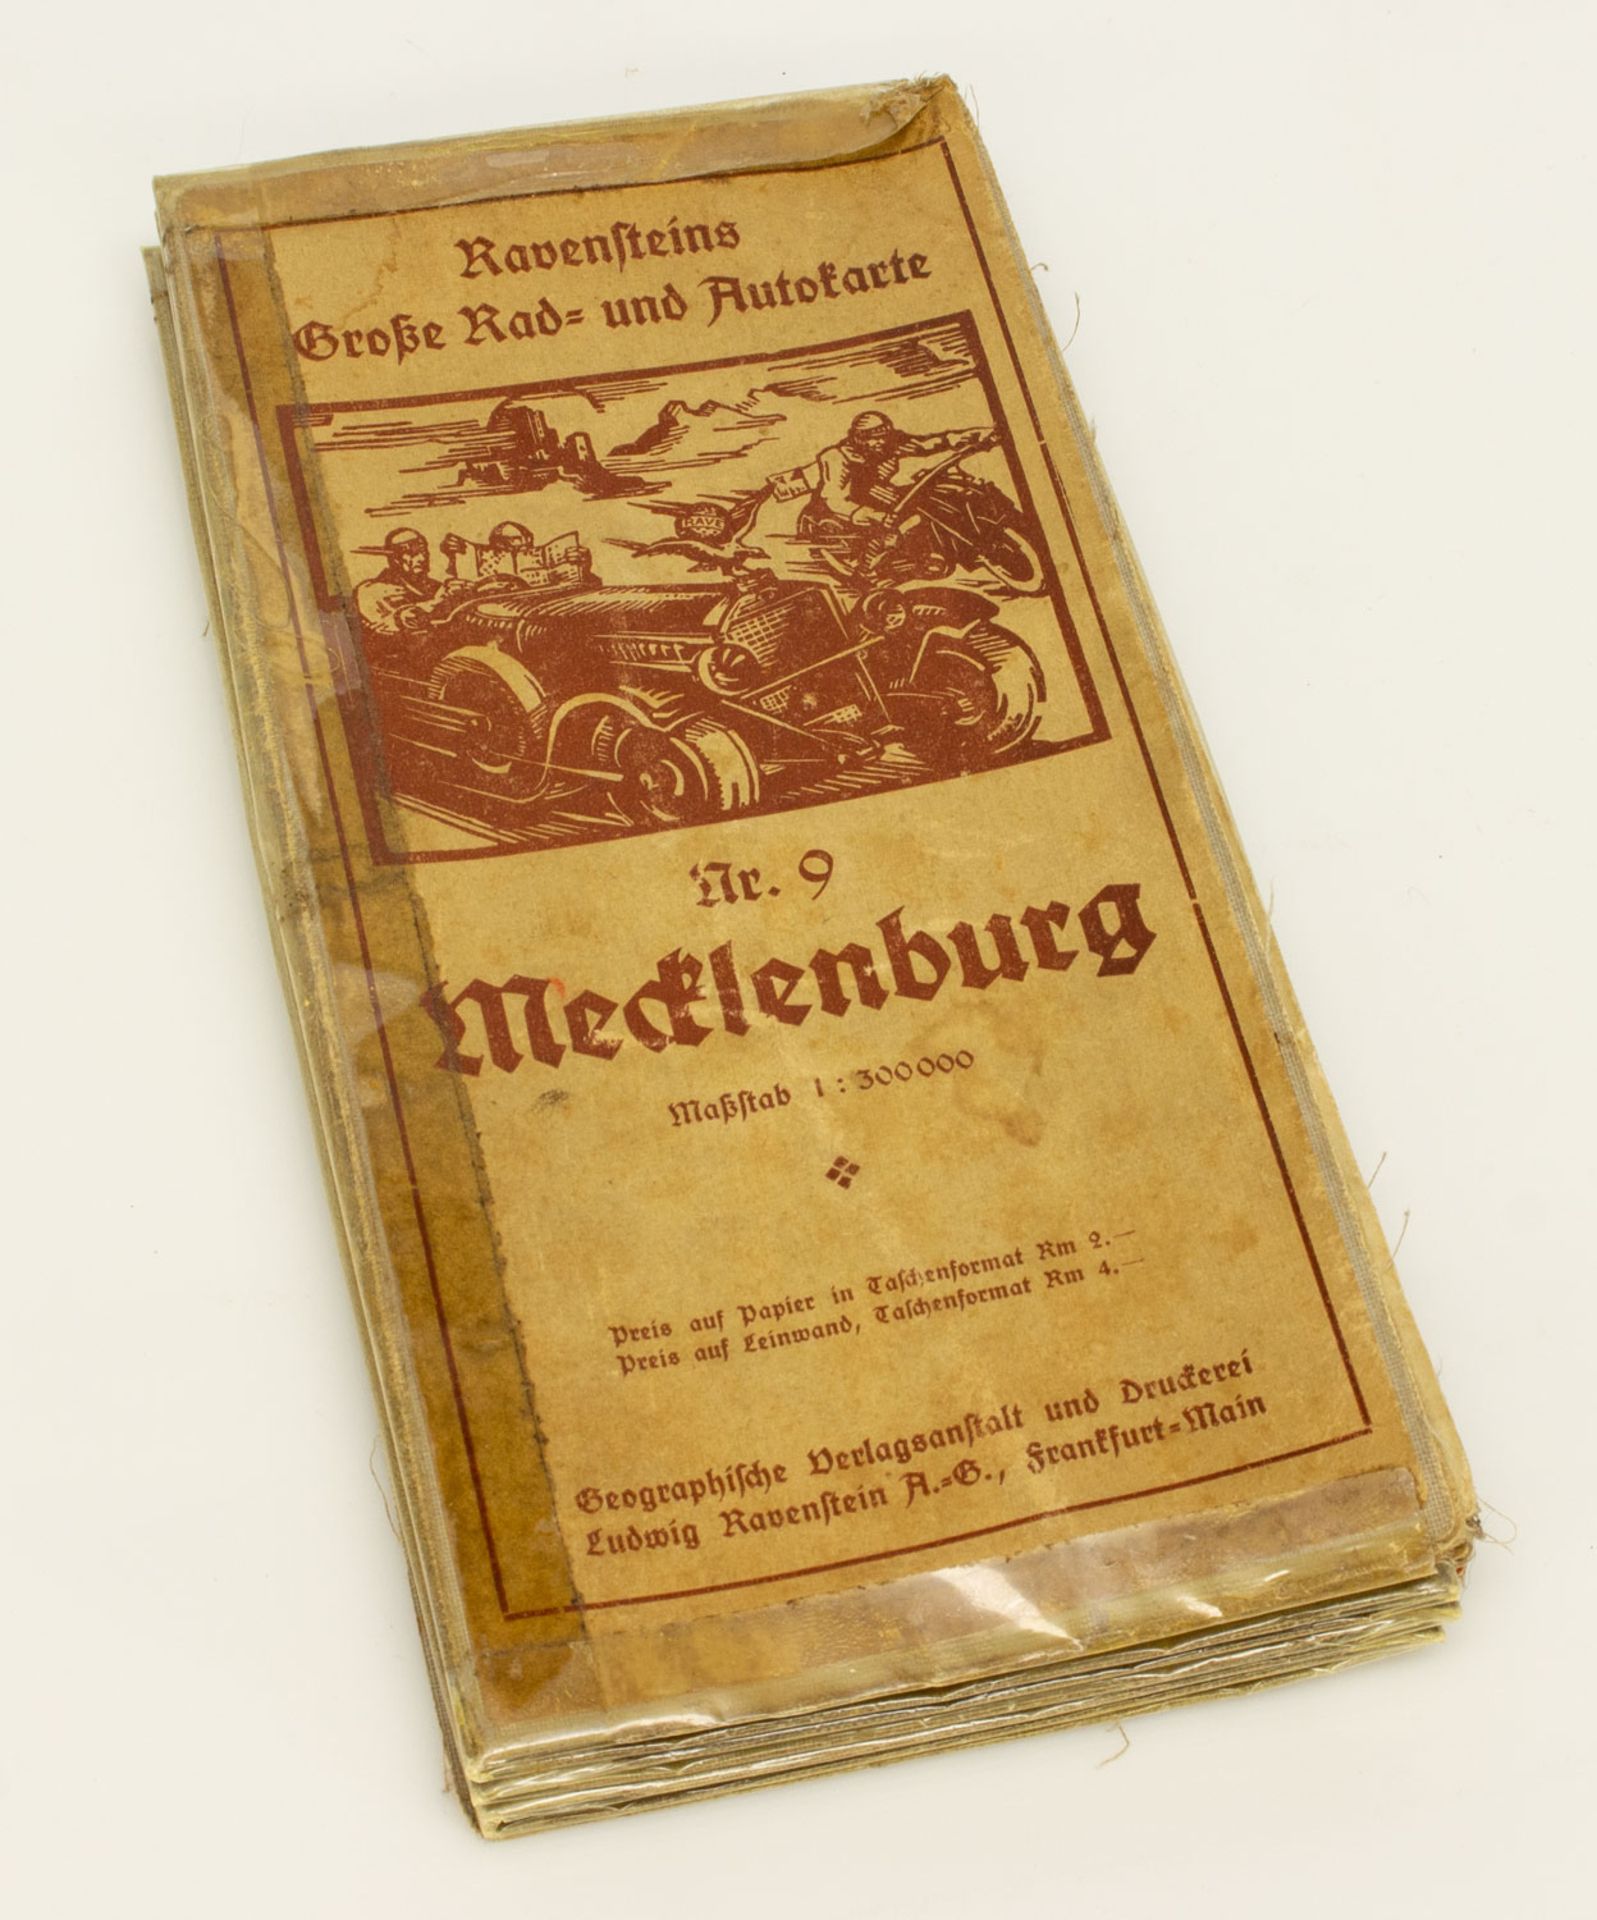 Ravensteins Große Rad- und Autokarte